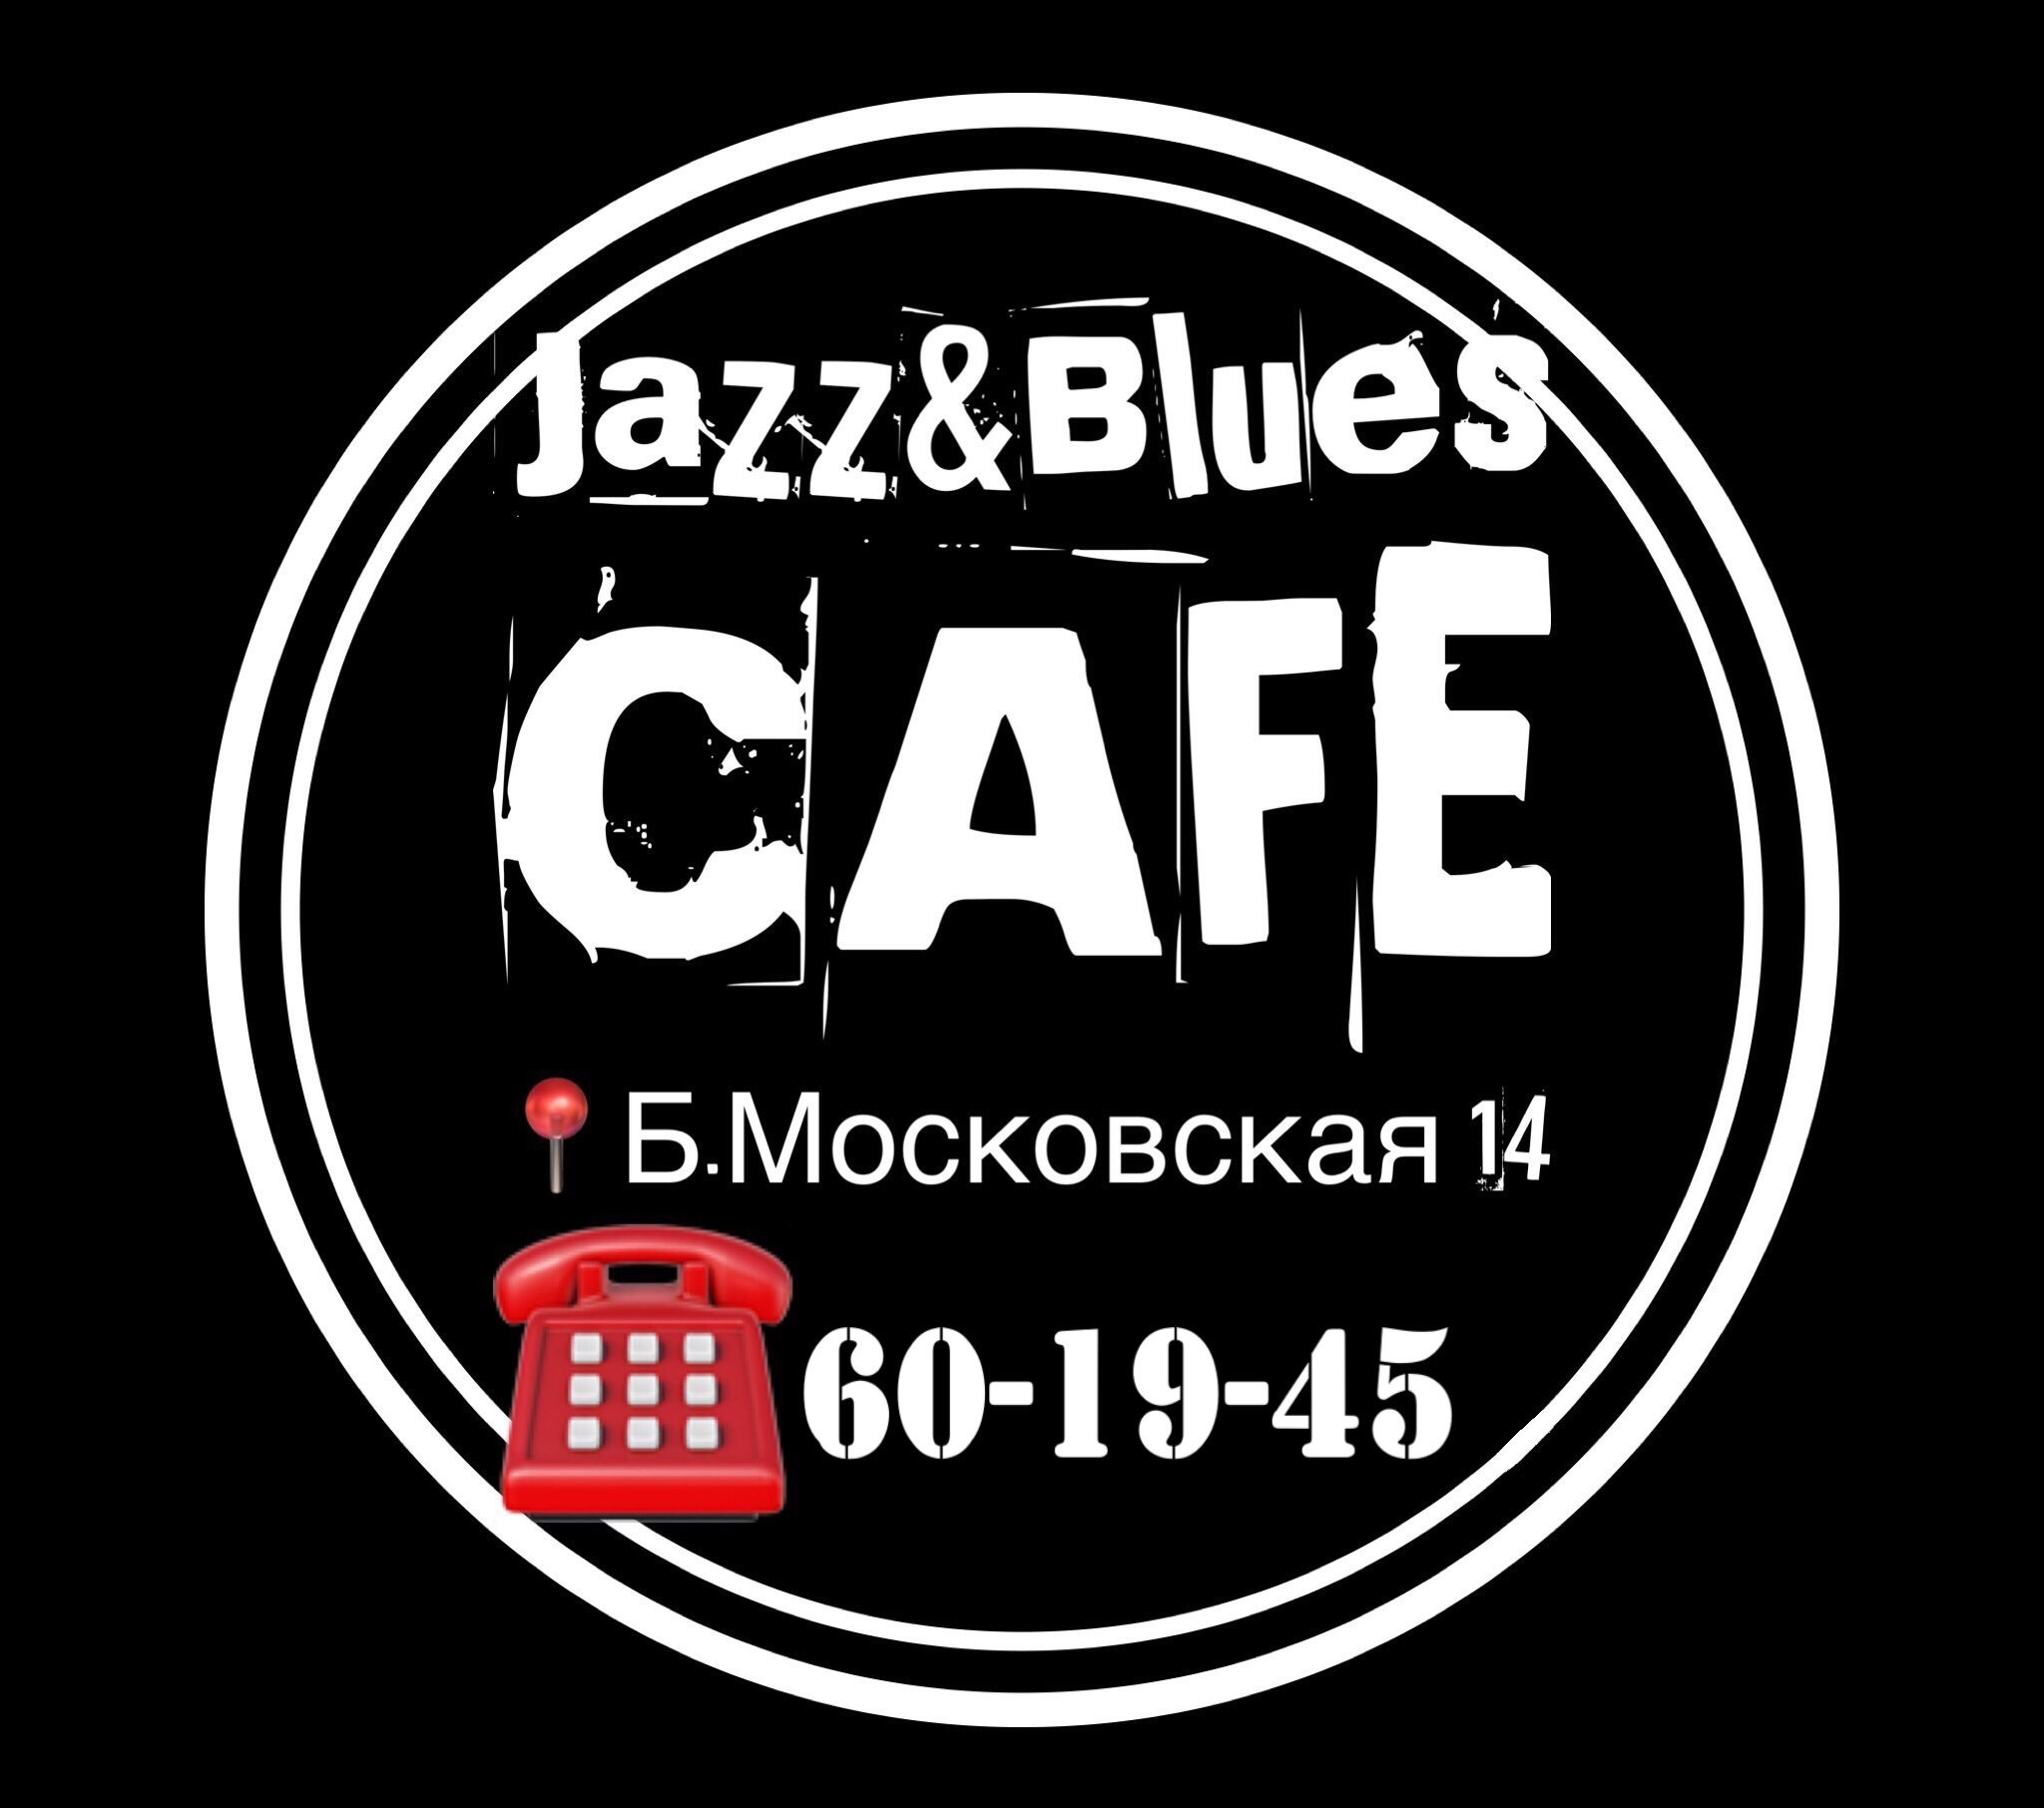 "Jazz & Blues café"